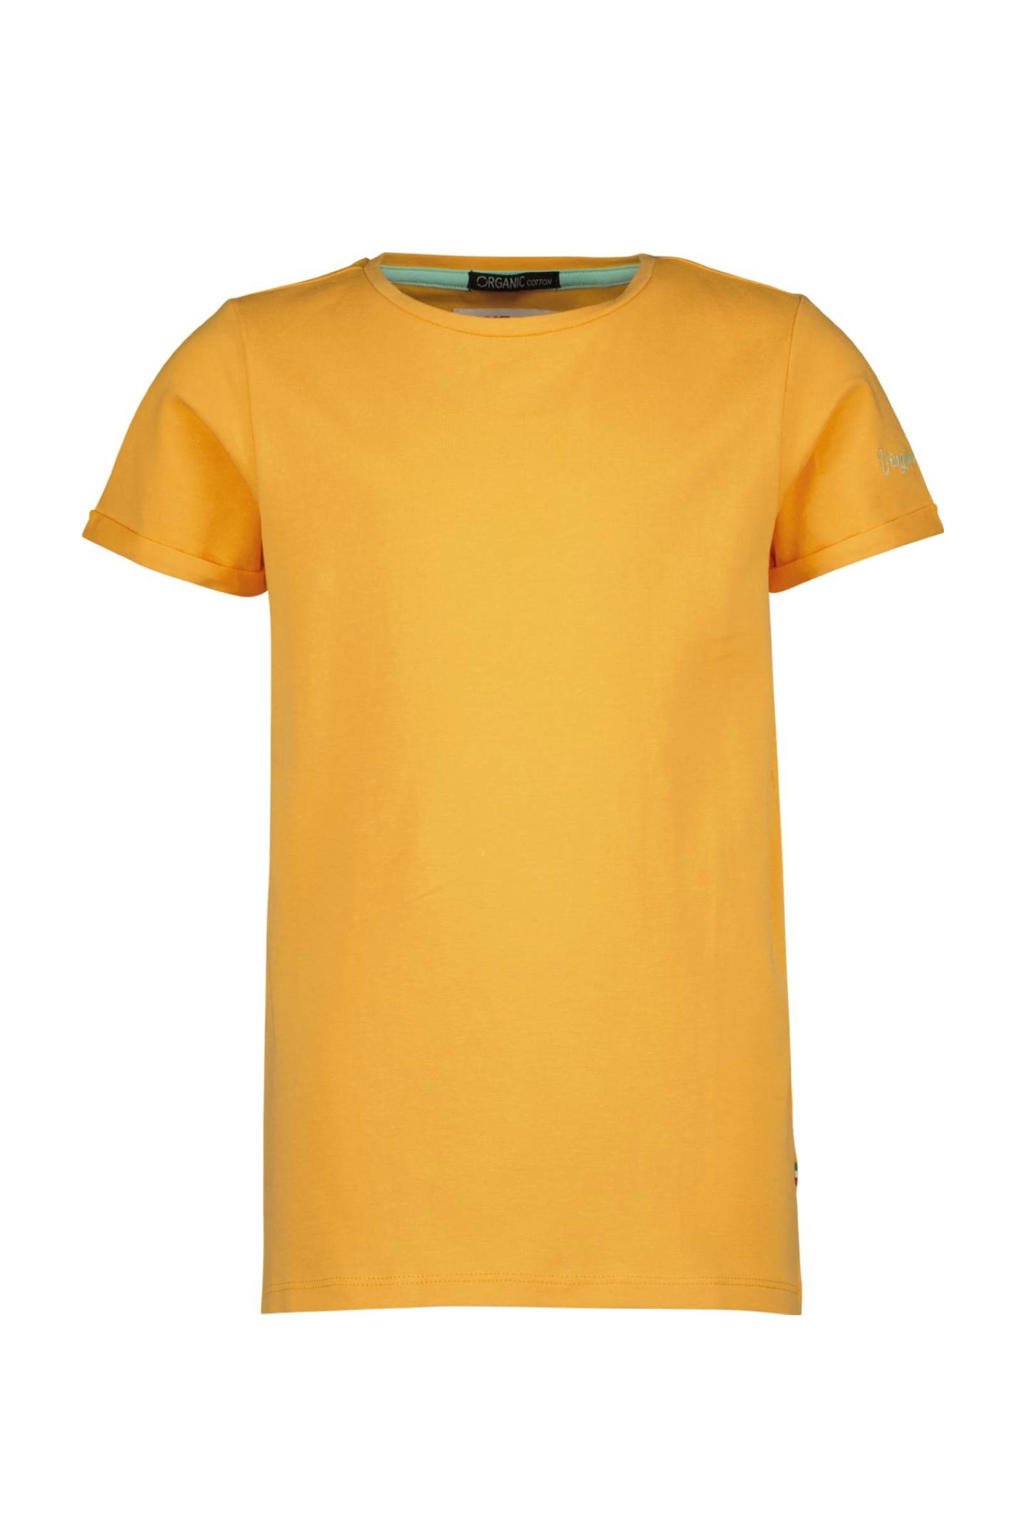 Oranje meisjes Vingino Essentials basic T-shirt van stretchkatoen met korte mouwen en ronde hals